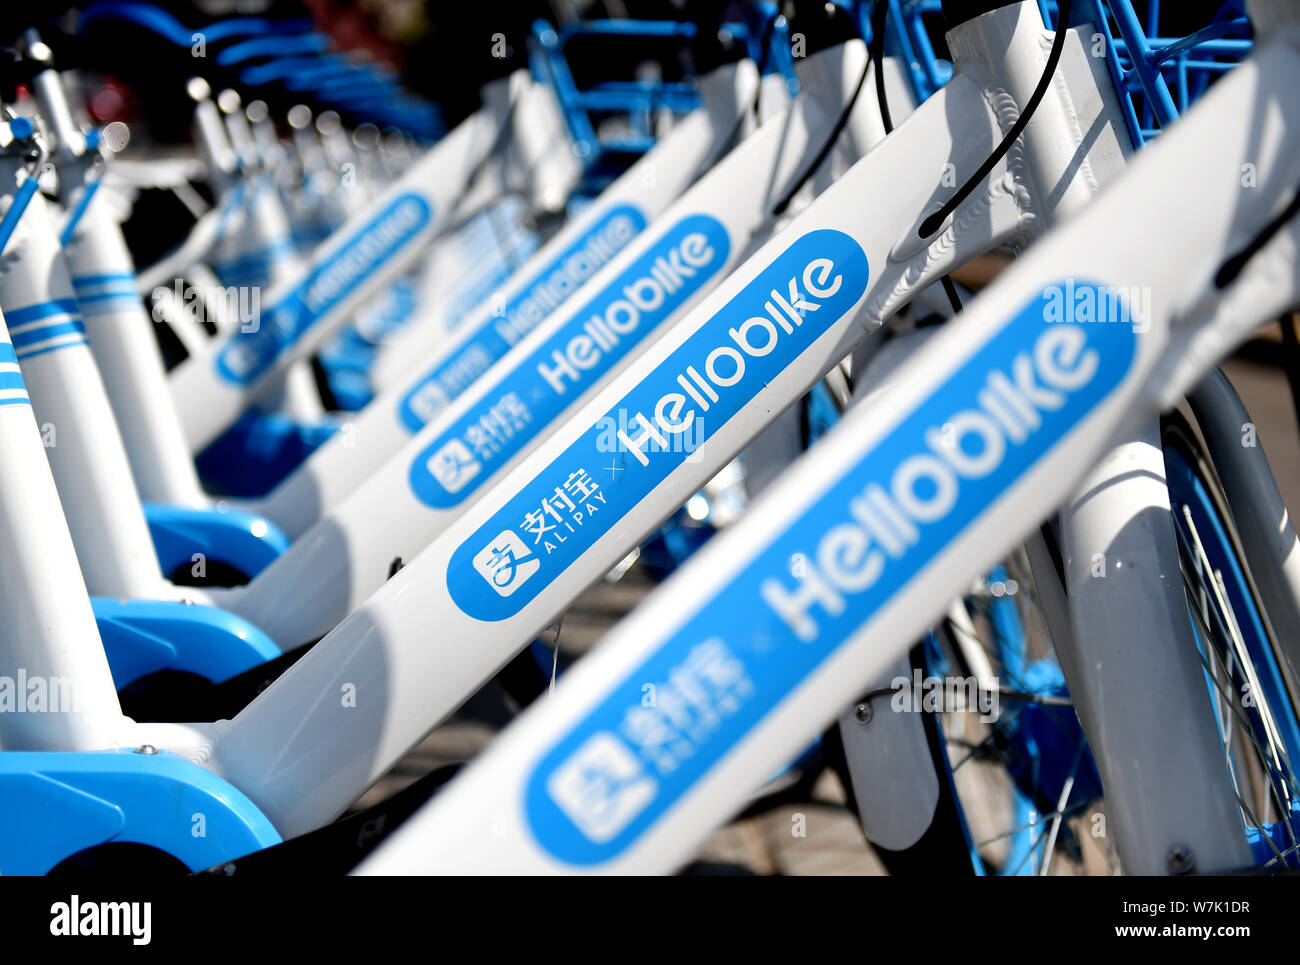 Fahrräder der Chinesischen bike-sharing service Hellobike werden auf einer Straße in Luoyang city gesäumt, die Zentrale China Provinz Henan, 11. September 2017. Bicy Stockfoto